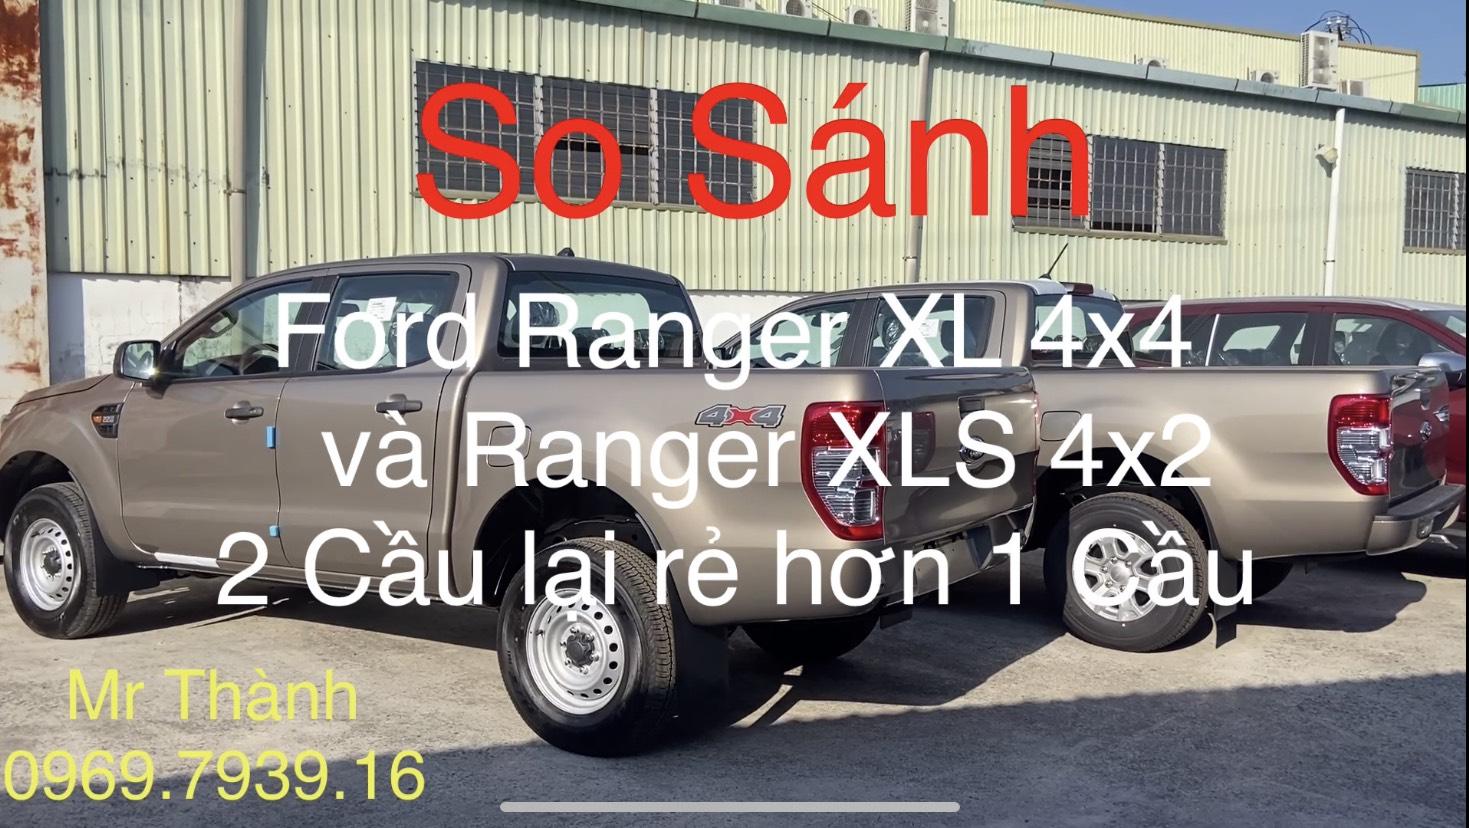 Thành Ford So Sánh Ford Ranger XL 2021 và Ford Ranger XLS 2021 | Chọn 2 cầu giá rẻ hay 1 Cầu Bán Chạy Nhất